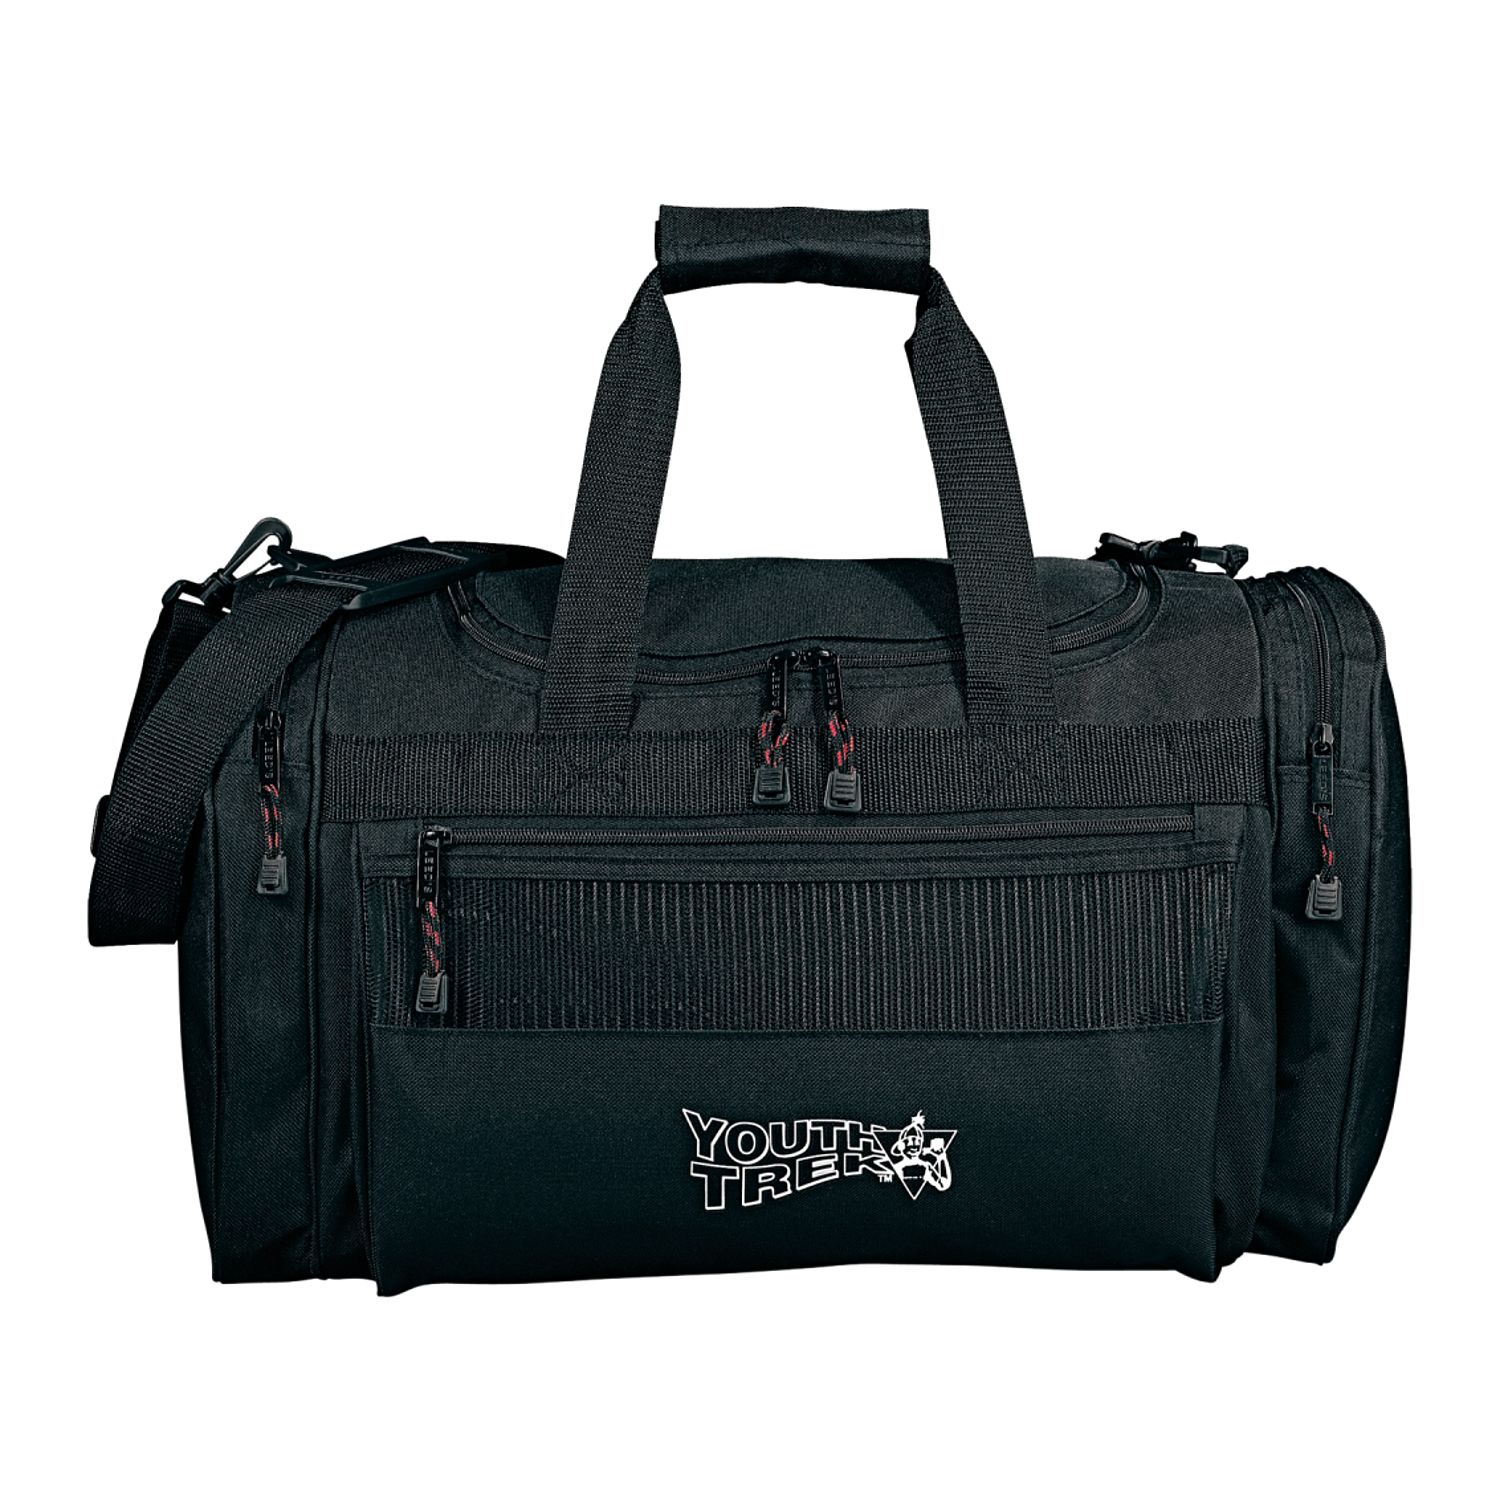 Excel Sport Deluxe 20" Duffel Bag